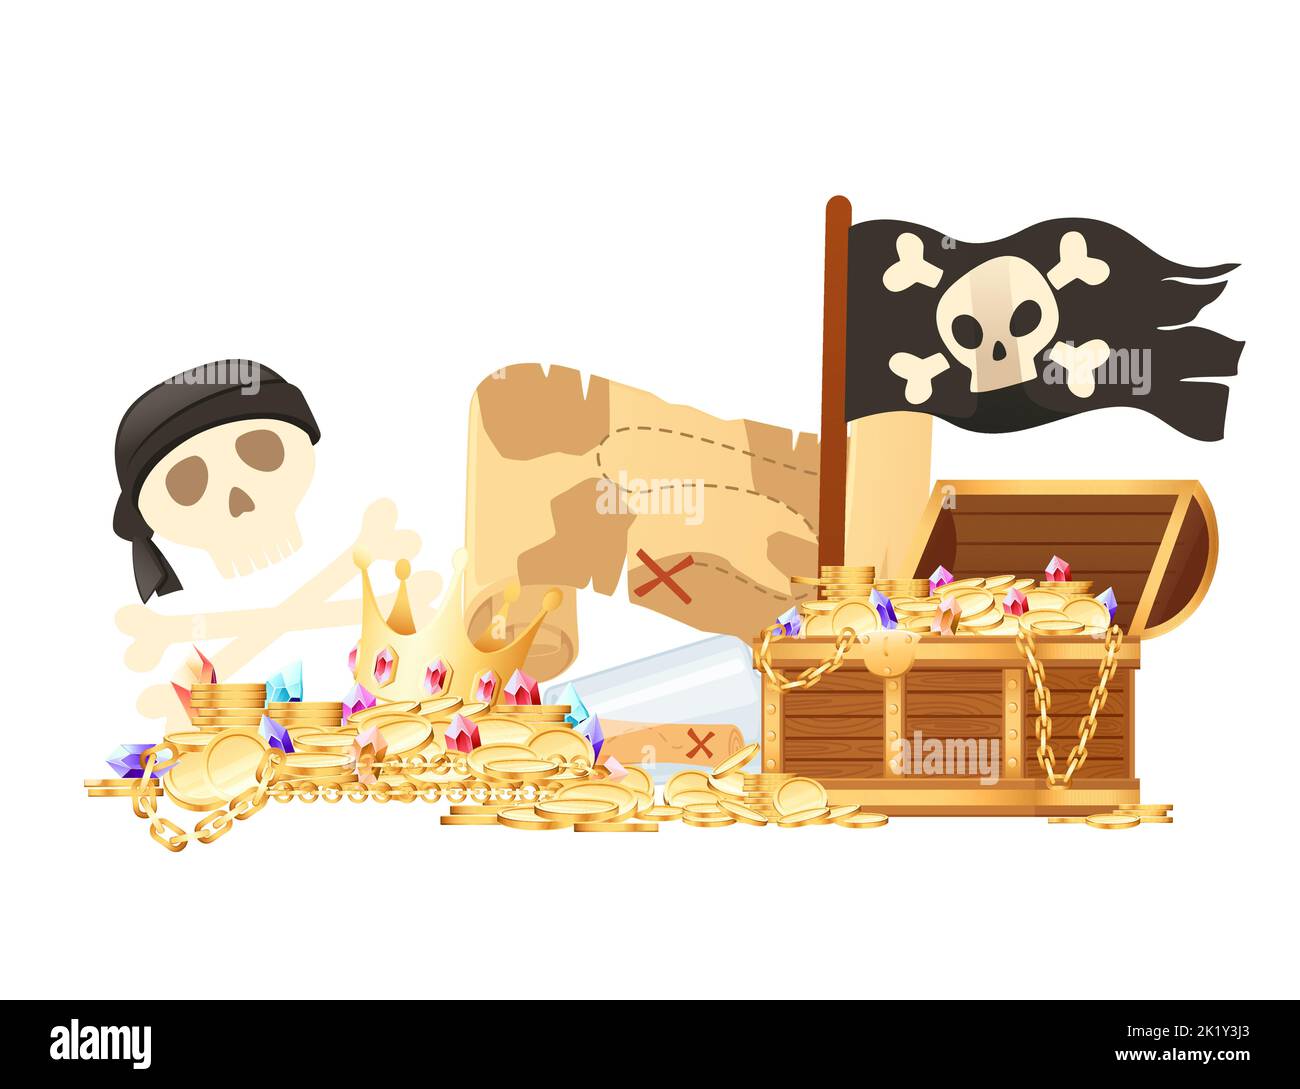 Illustration von Piraten-Thema mit Schatzkarte Hut und hölzernen Brust Vektor-Illustration isoliert auf weißem Hintergrund Stock Vektor